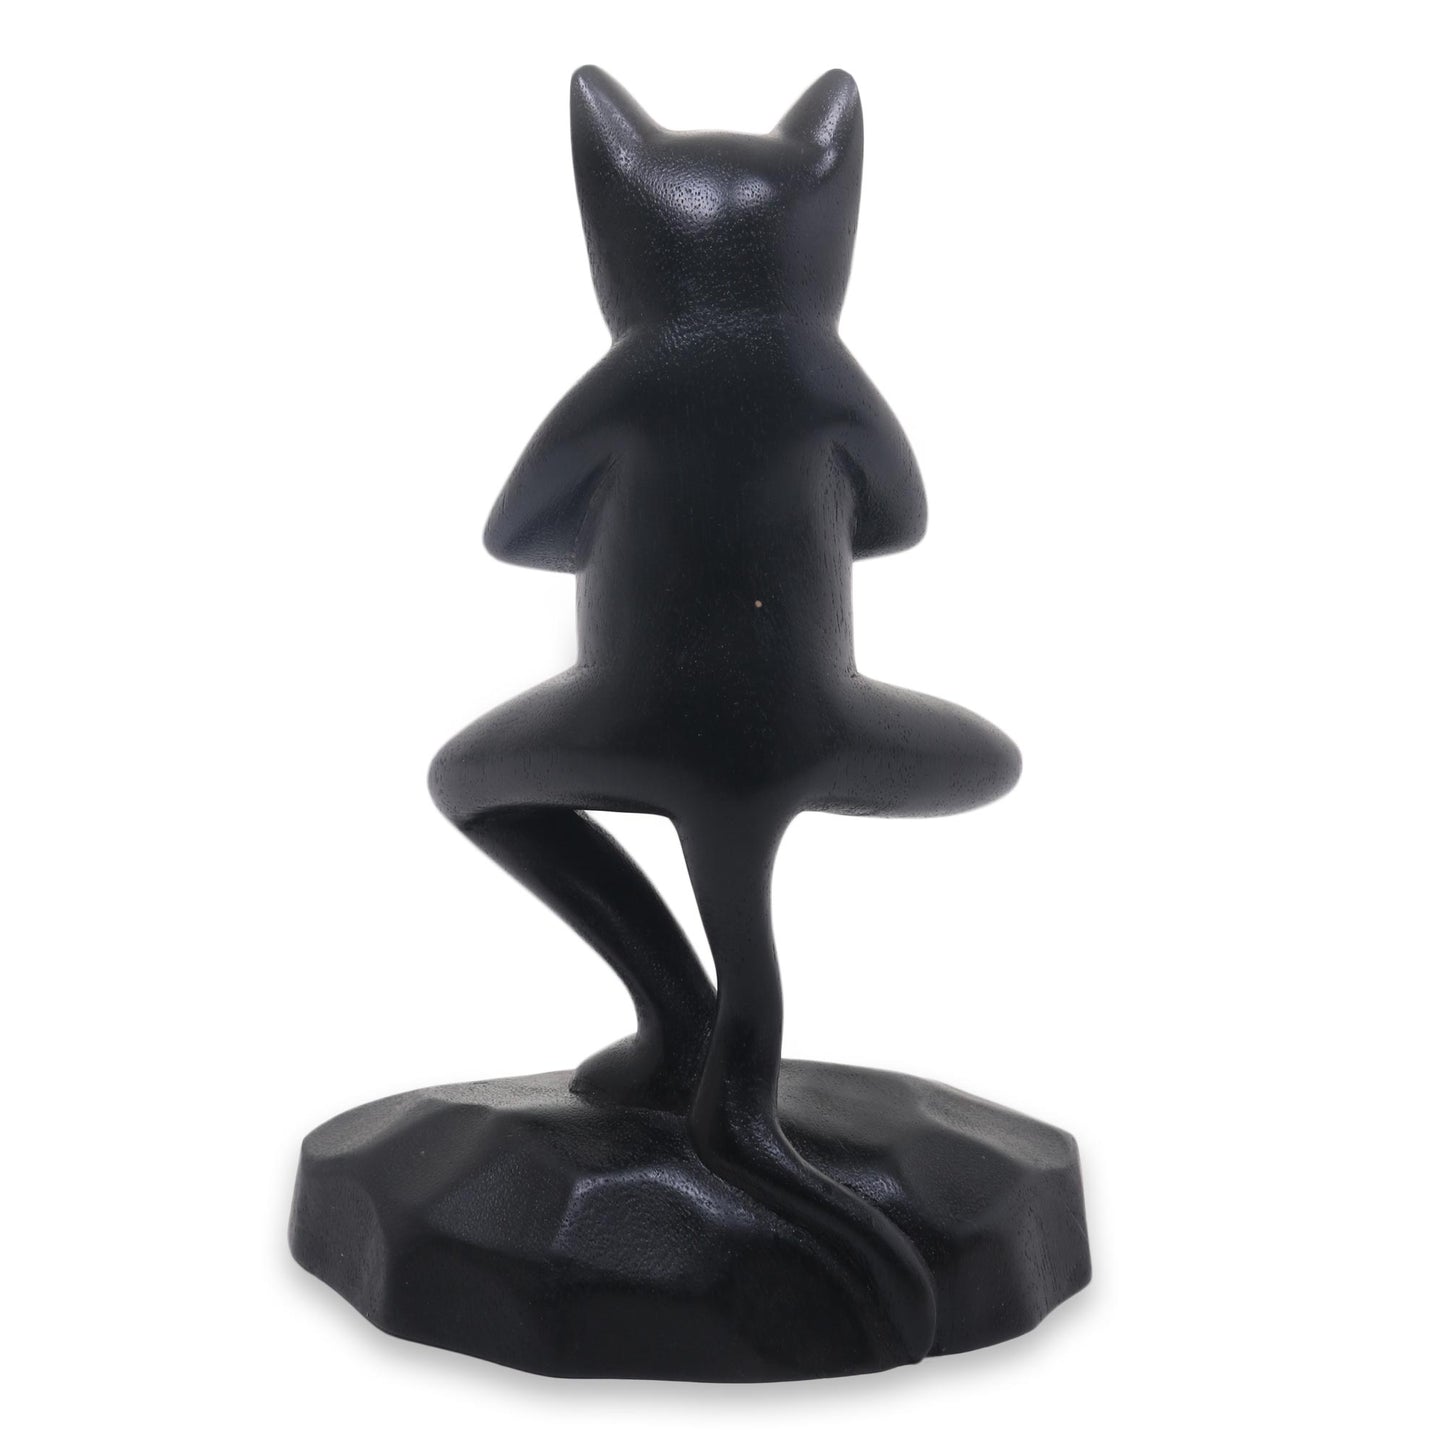 Vrkasana Black Cat Unique Wood Sculpture of Black Cat in Yoga Pose